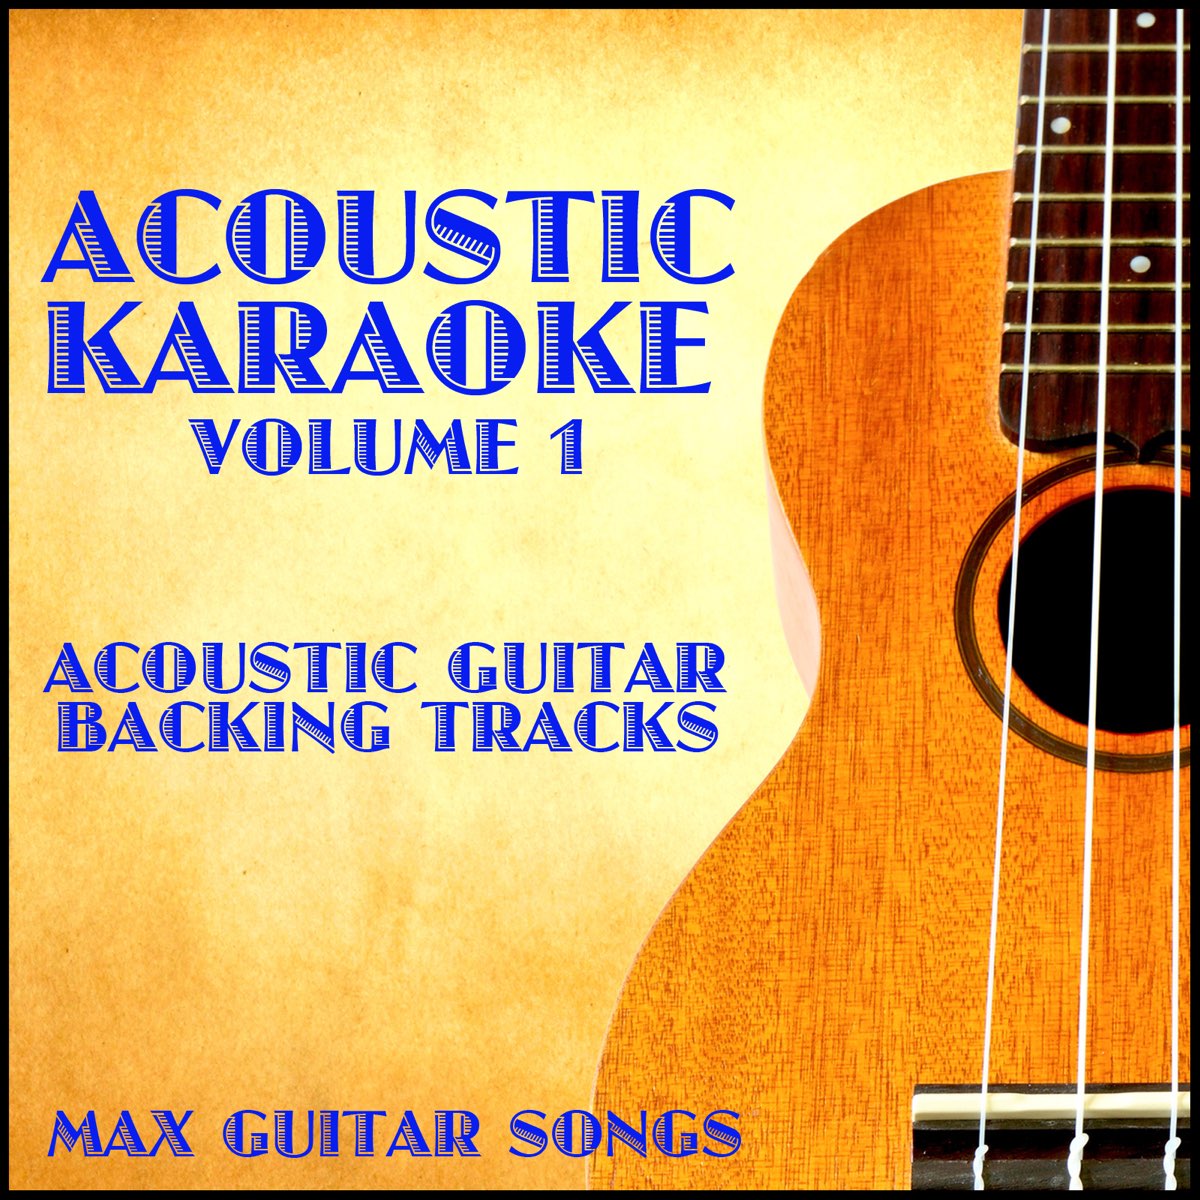 Acoustic Karaoke, Vol. 1 - Album by Max Guitar Songs - Apple Music